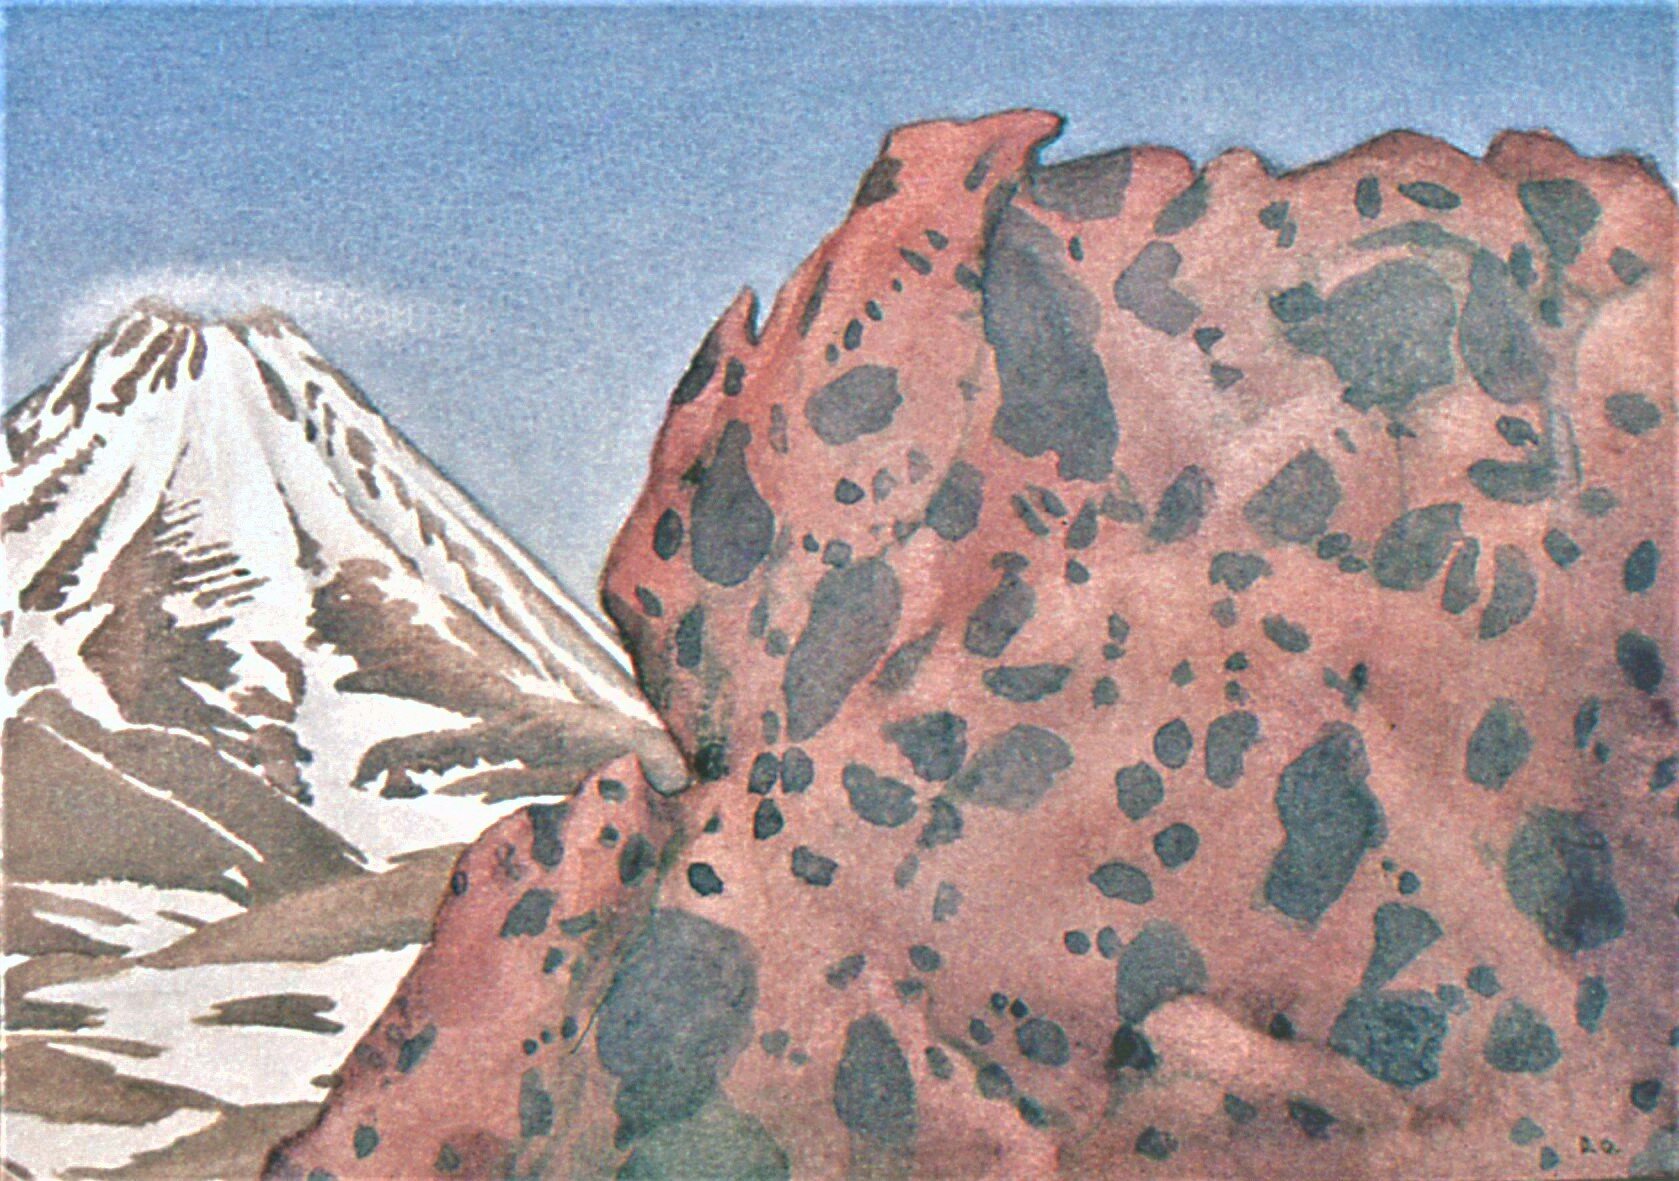    Spotty ignimbrite ,  23x30.5, watercolour, 1984.  